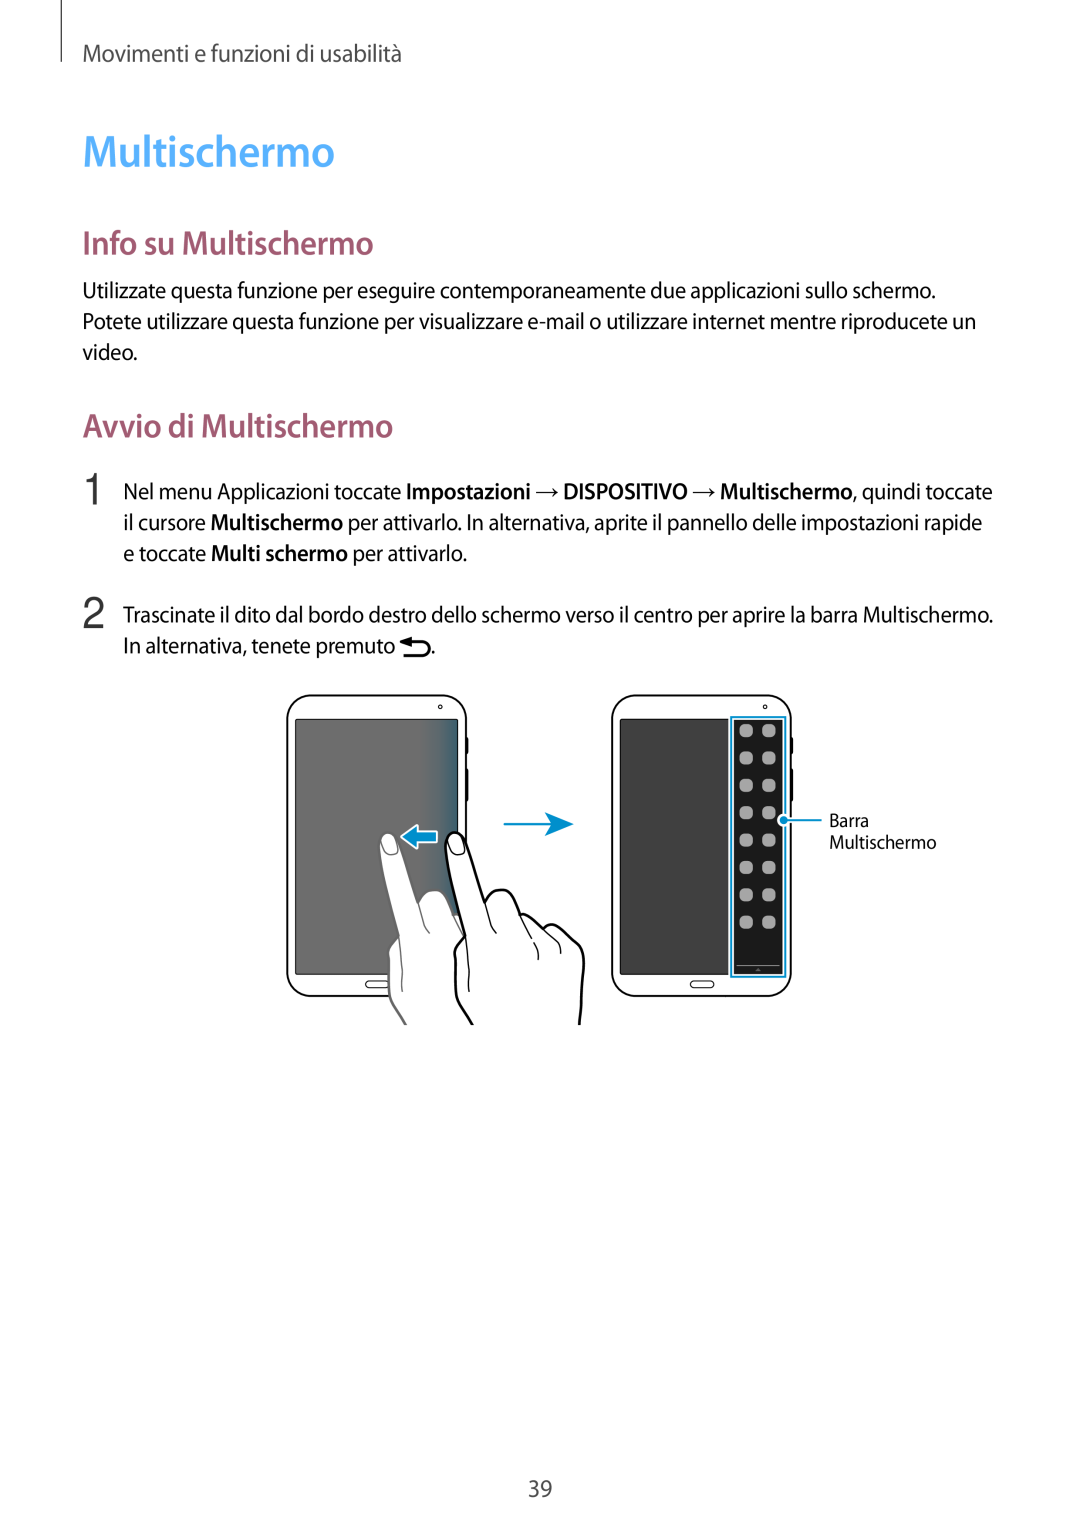 Samsung SM-T700NZWAITV, SM-T700NZWATUR Info su Multischermo, Avvio di Multischermo, Movimenti e funzioni di usabilità 